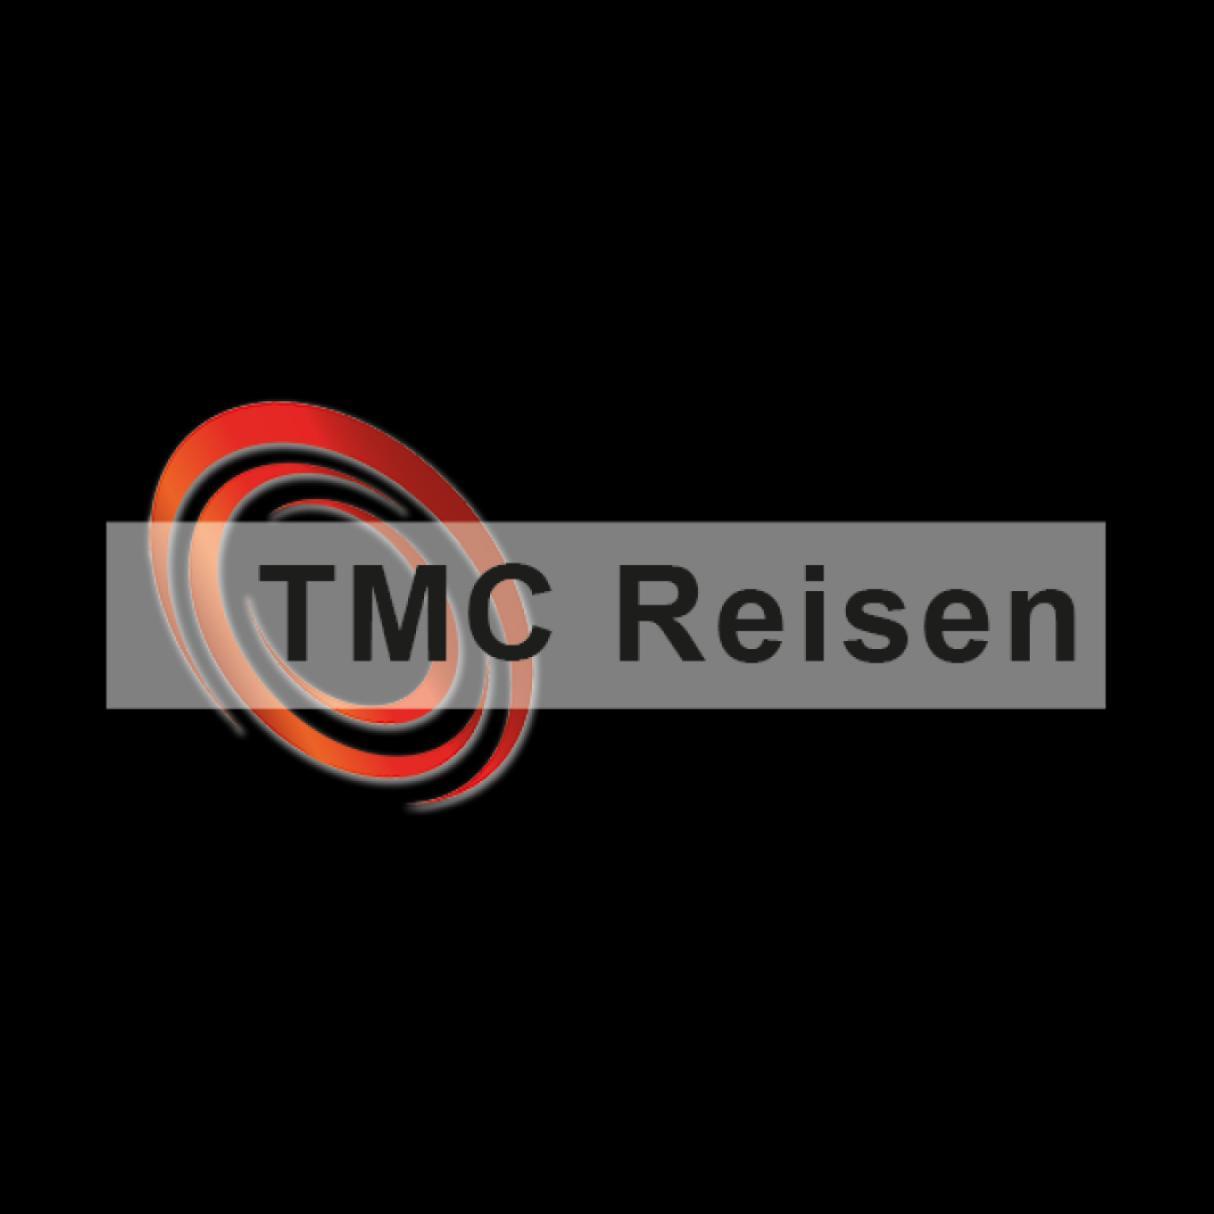 TMC Reisen logo